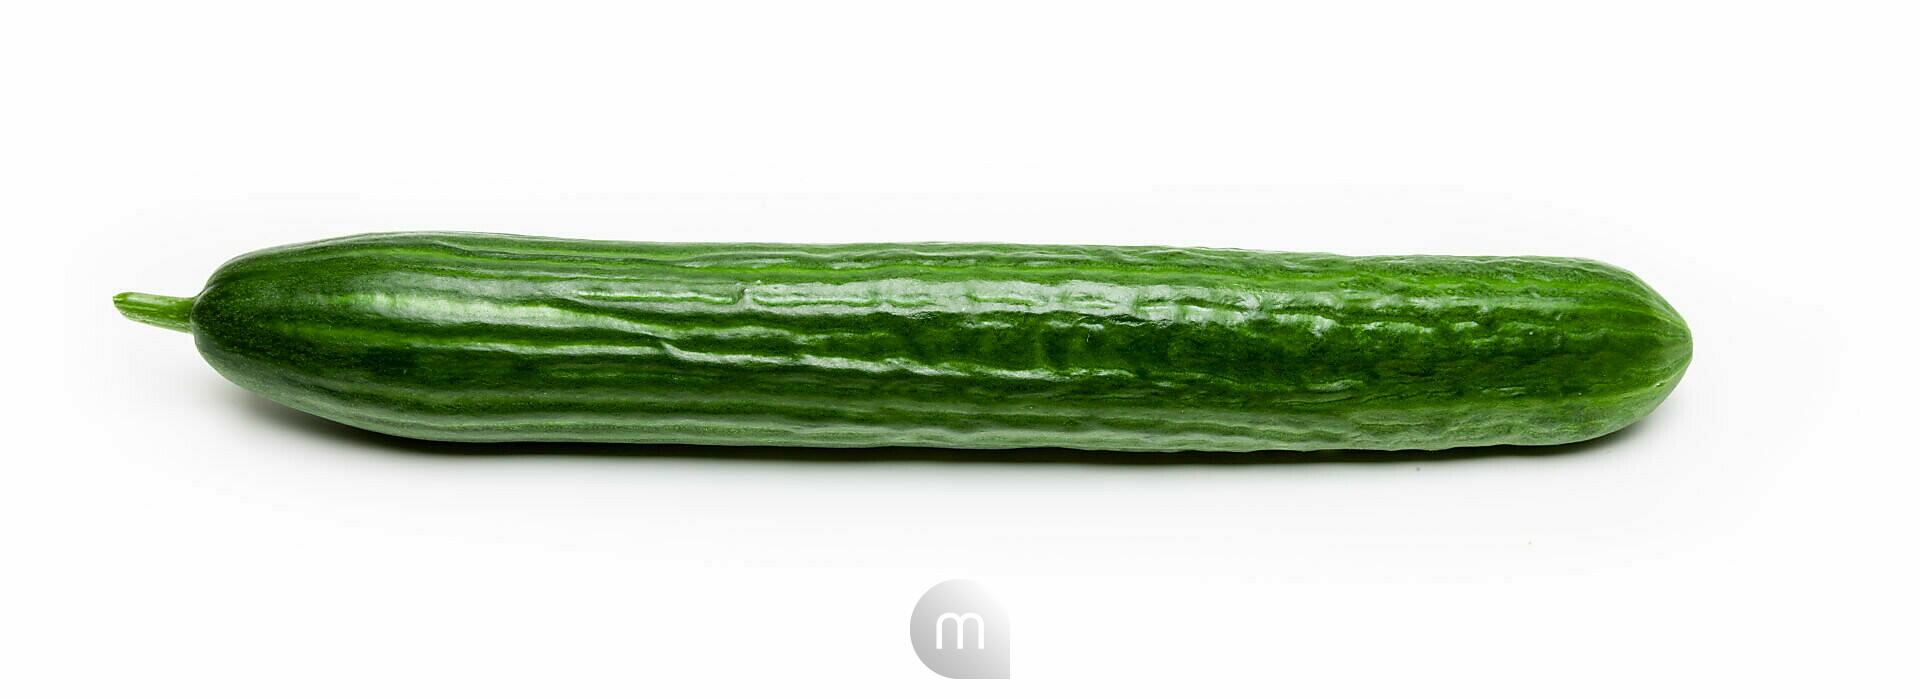 Bildagentur | mauritius images | Cucumber on white background